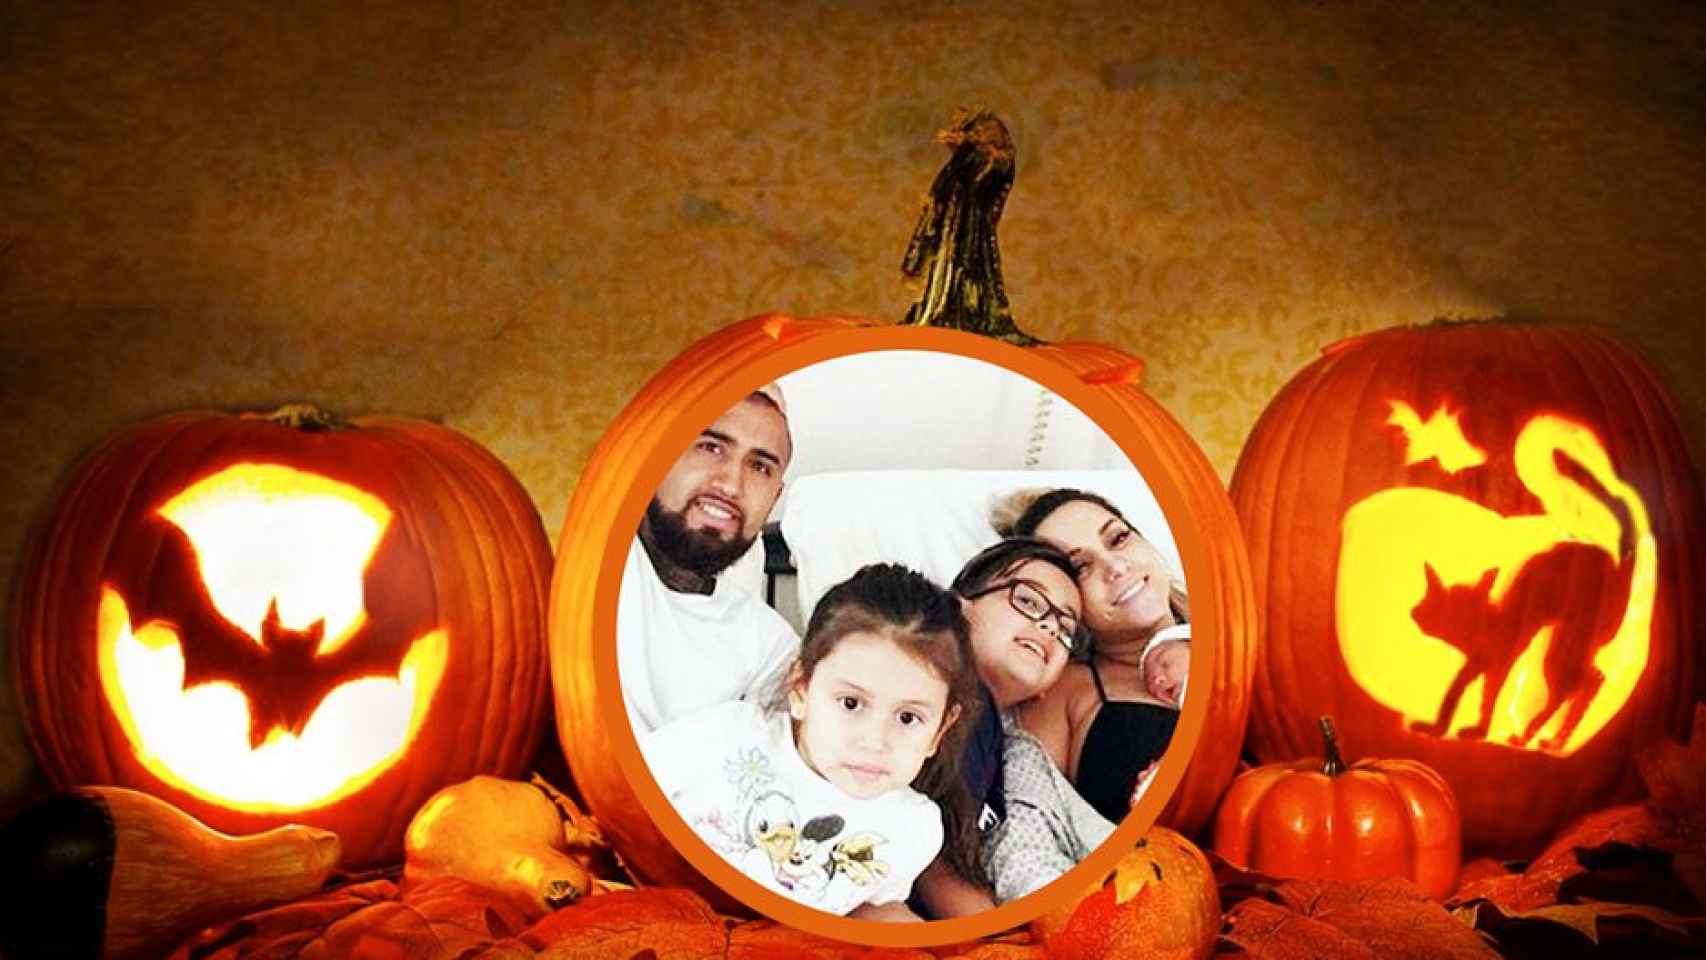 La familia Vidal-Matus entre calabazas de Halloween / FOTOMONTAJE DE CULEMANÍA